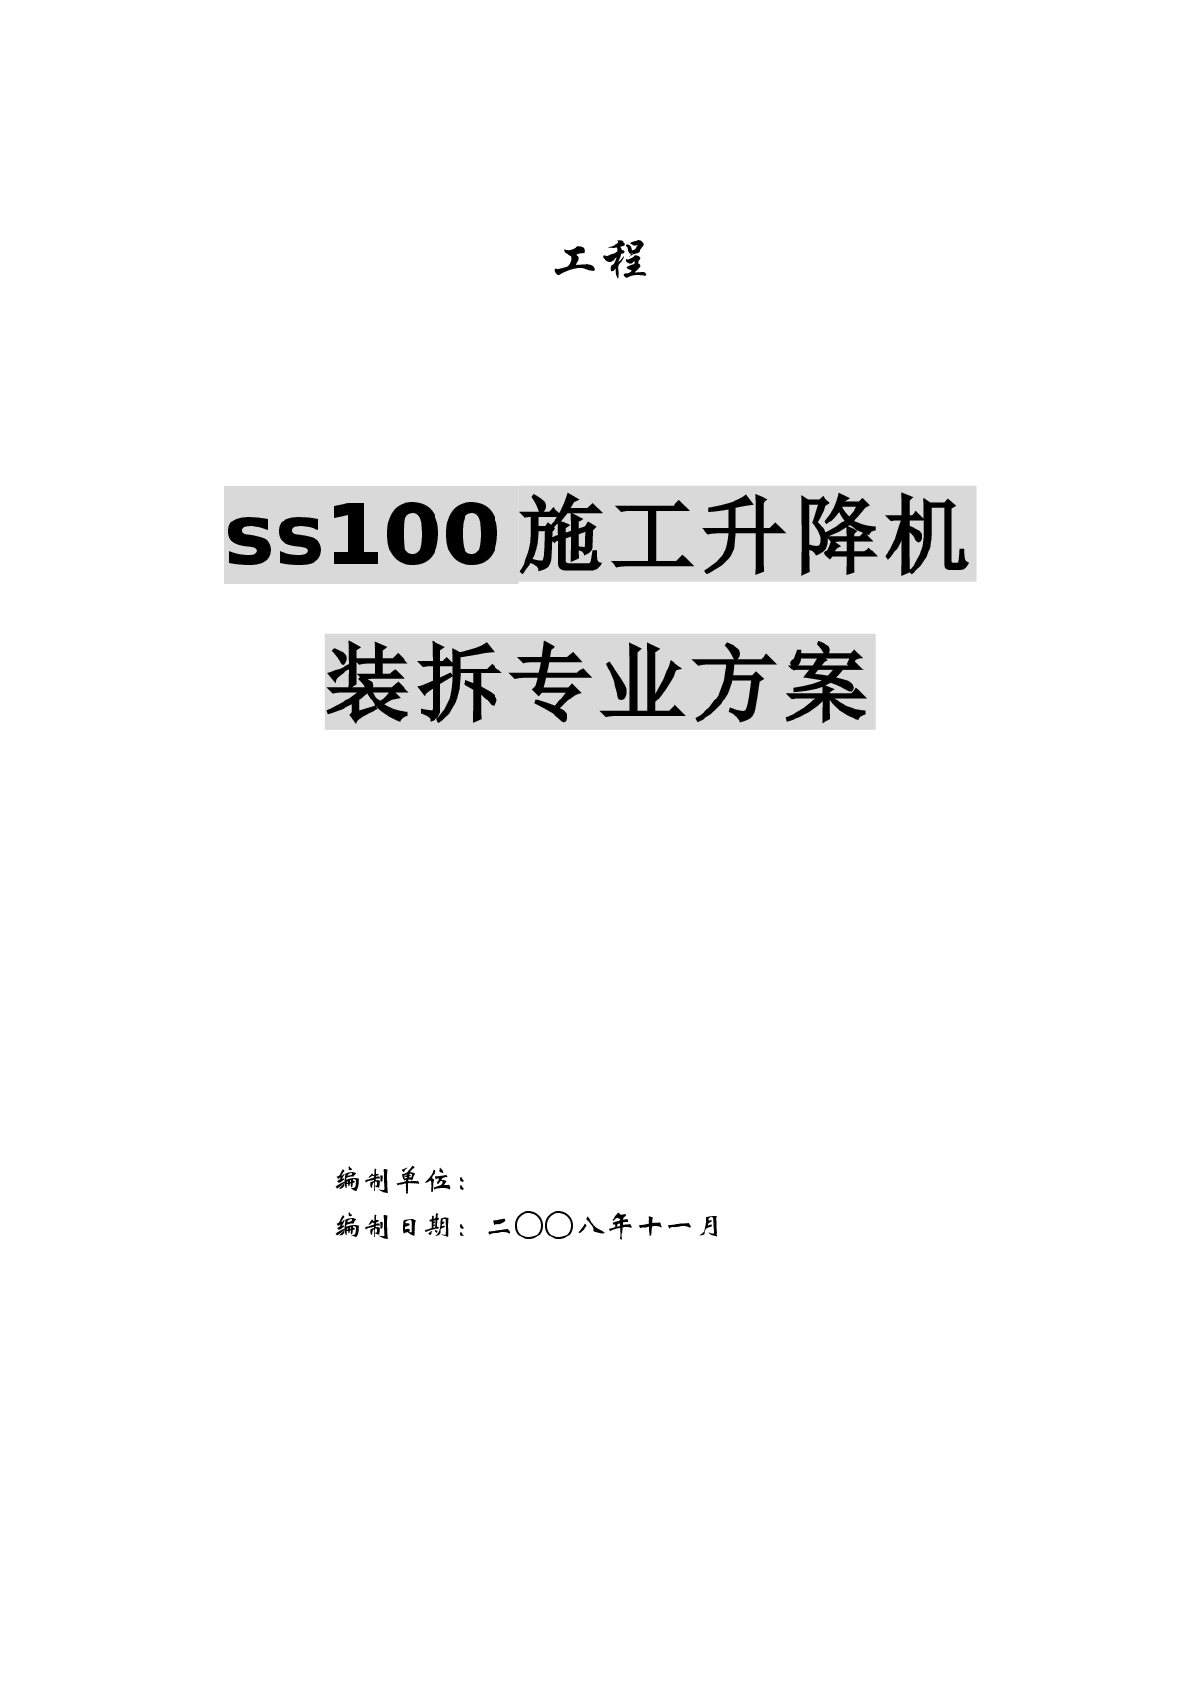 ss100施工升降机装拆专业方案